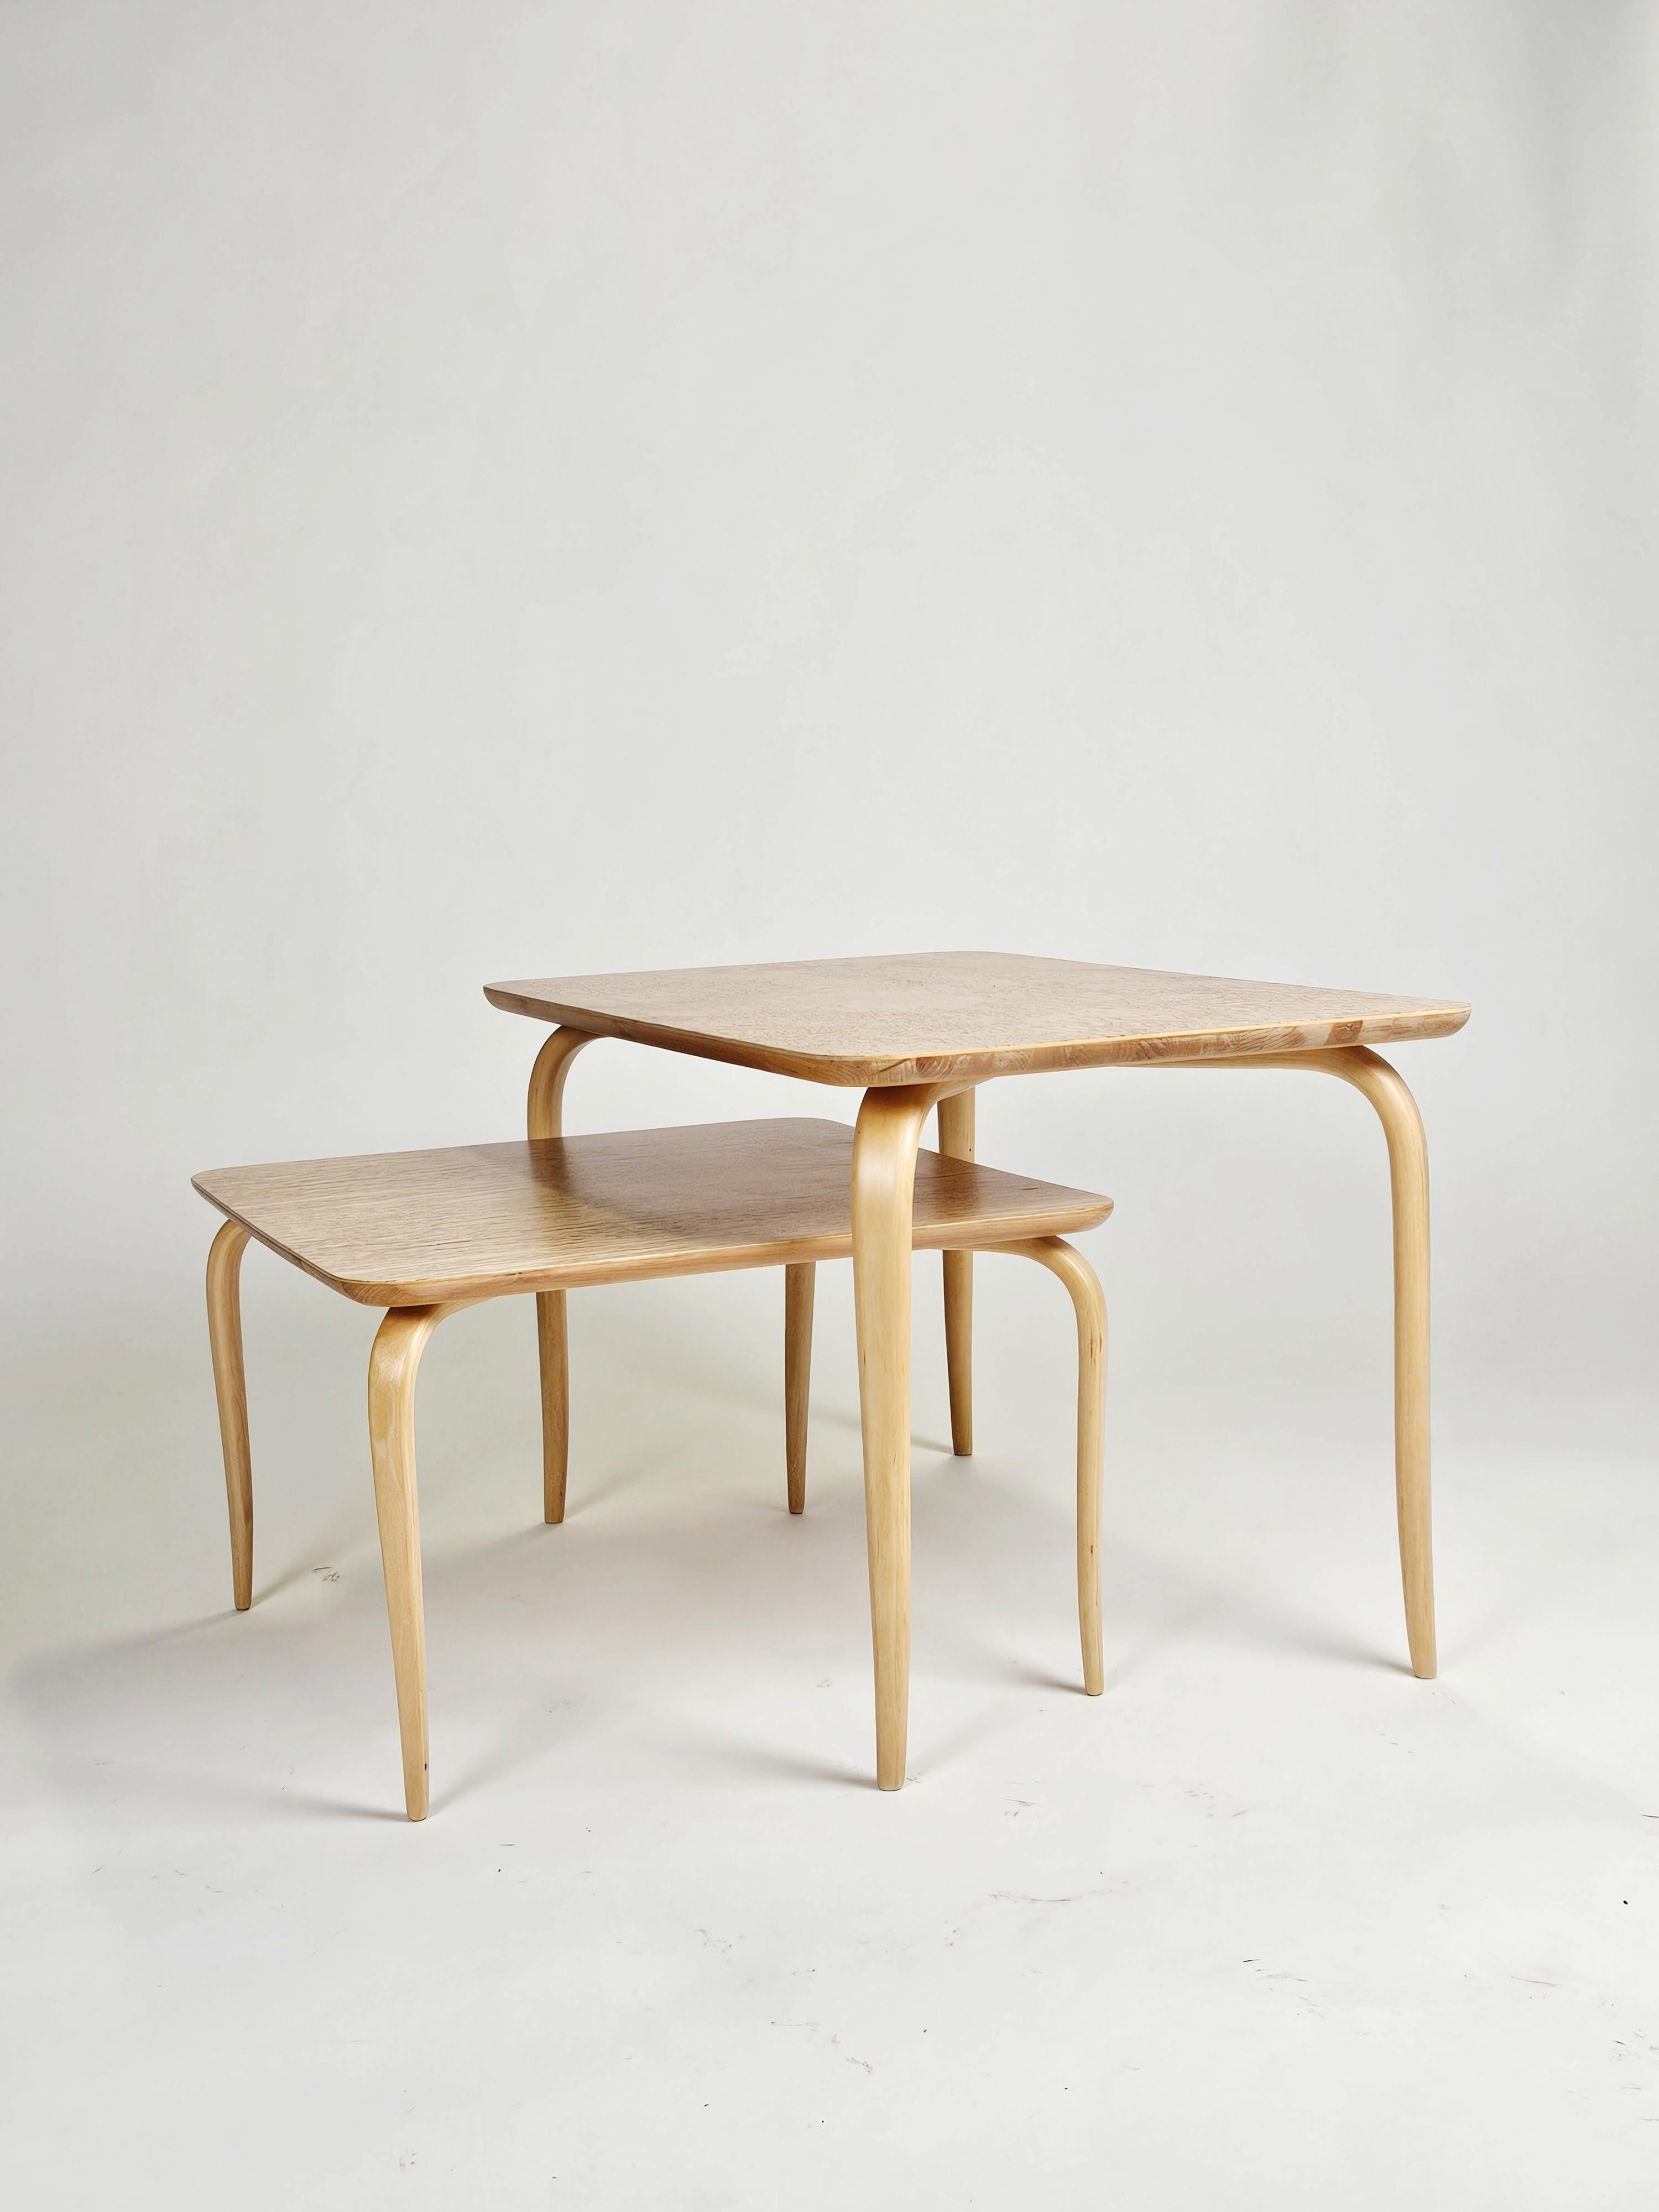 Magnifique ensemble de tables basses ou tables gigognes conçu par Bruno Mathsson pour Firma Karl Mathsson, Suède, au cours des années 1950. 

Un design élégant. 

Dessus en bouleau frisé en très bon état. 

La plus petite table mesure 54,5x54,5 cm